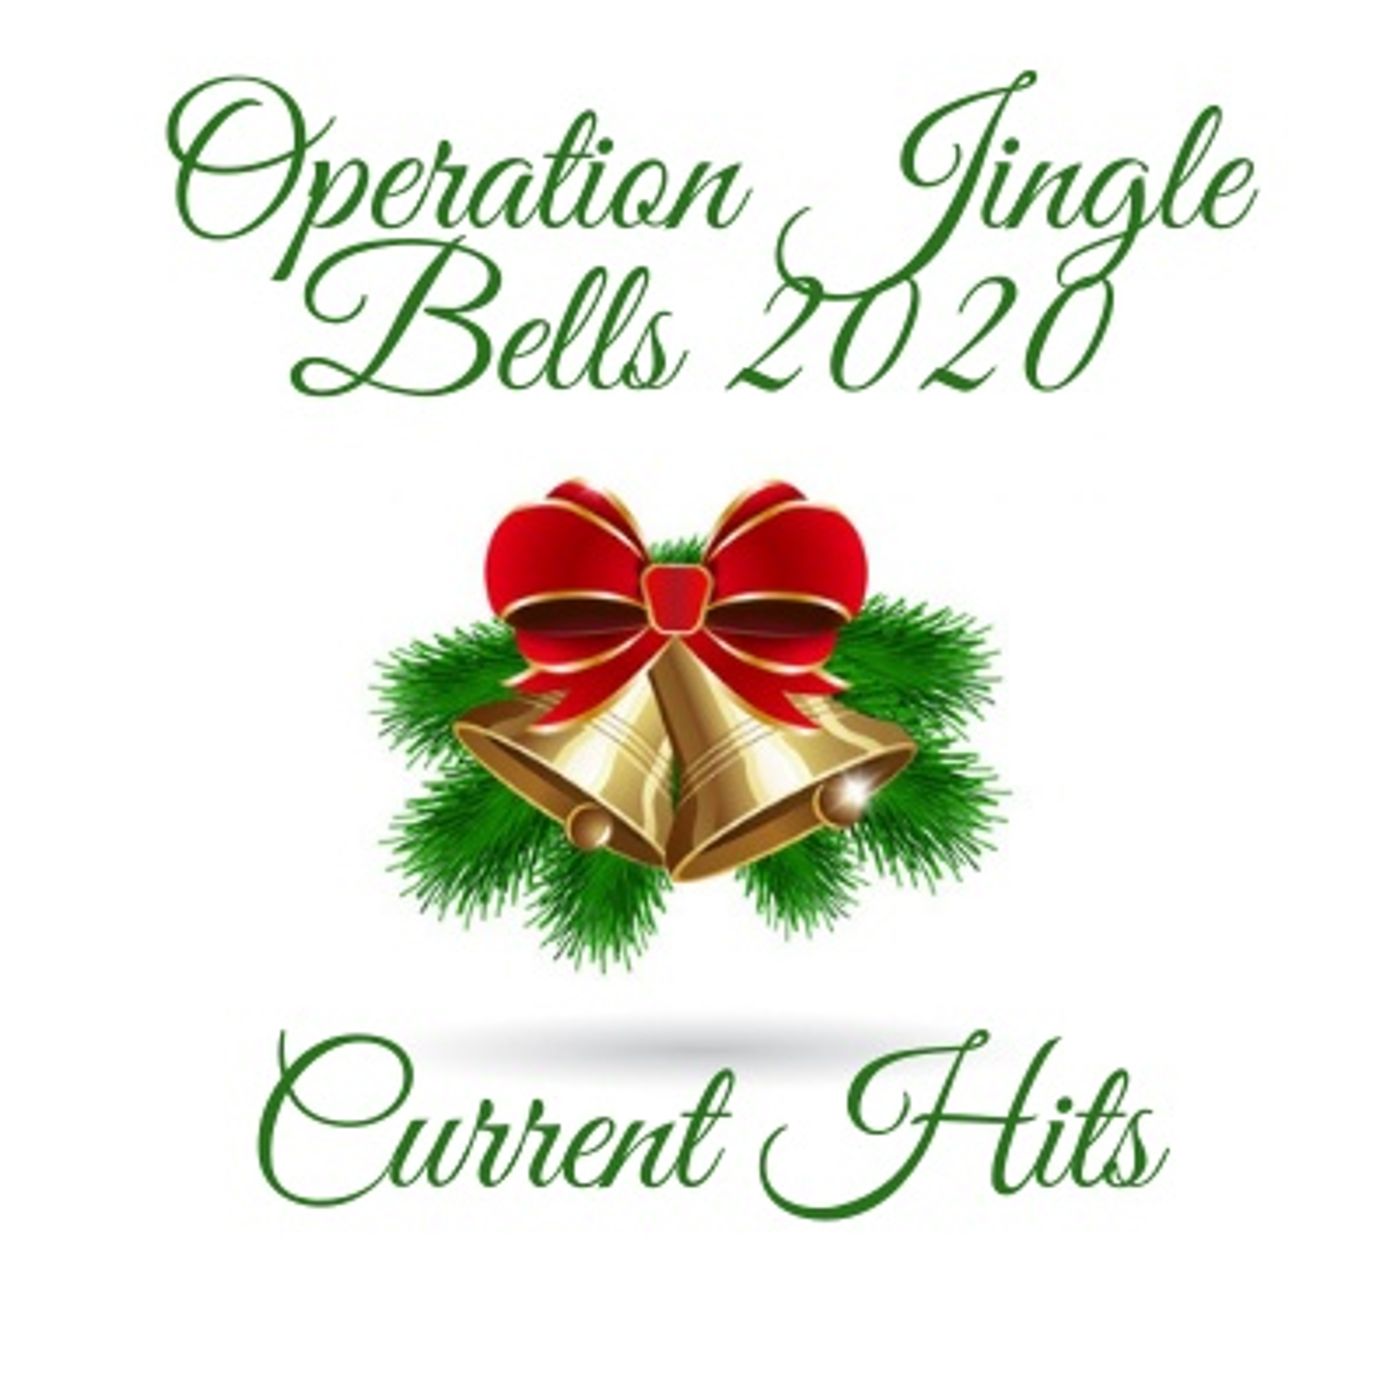 Opeation Jingle Bells 2020